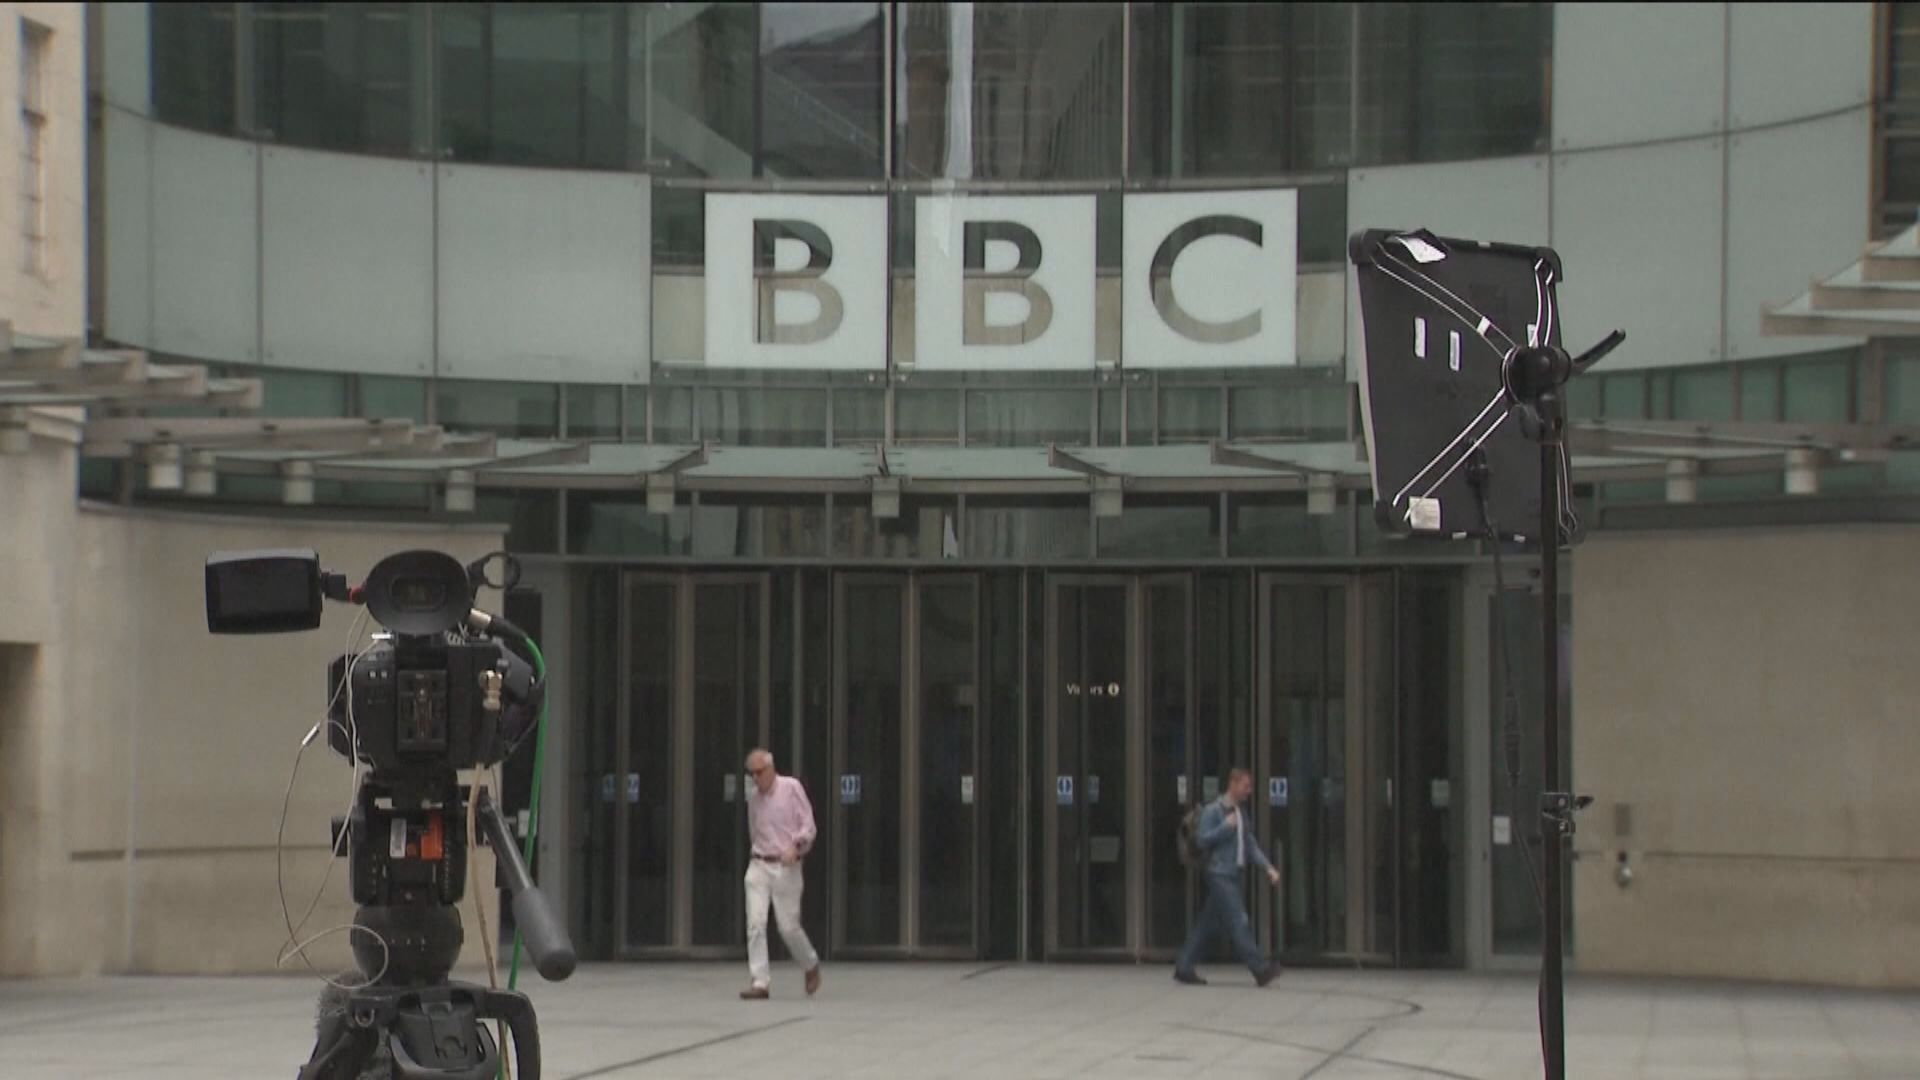 BBC男主持醜聞案 涉事少年否認相關指控